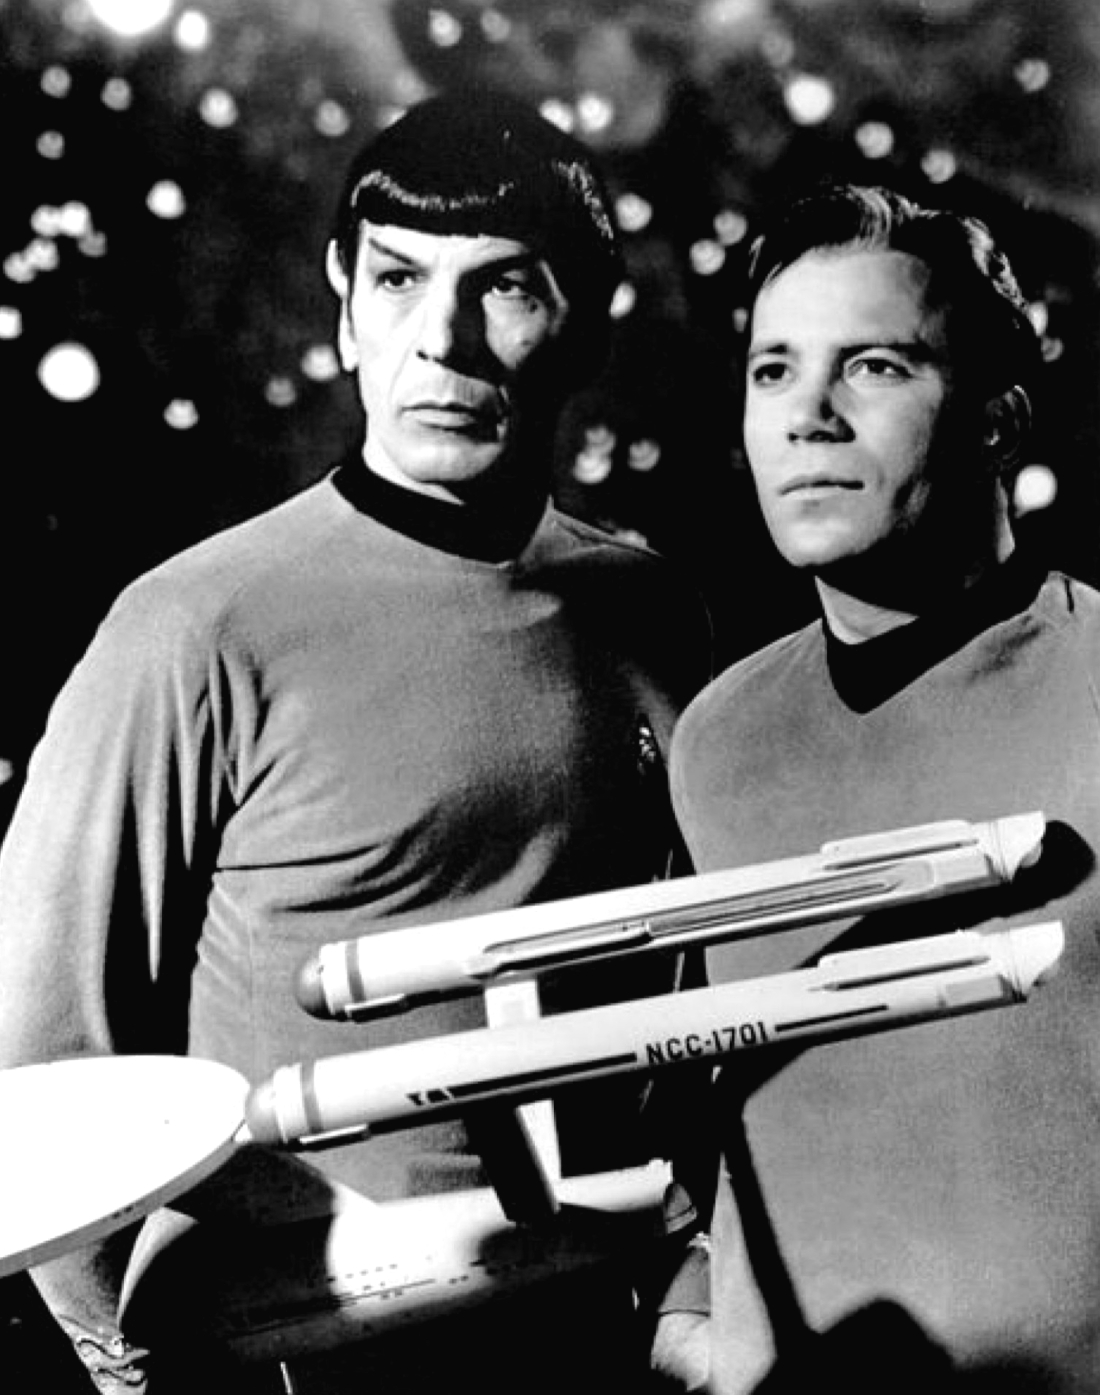 Προωθητική εικόνα με τον Λέοναρντ Νιμόυ και τον Γουίλλιαμ Σάτνερ, που υποδύονταν αντιστοίχως τον Δρα Σποκ και τον Κάπταιν Κερκ, στο τηλεοπτικό πρόγραμμα της δεκαετίας του 1960, Star Trek.     